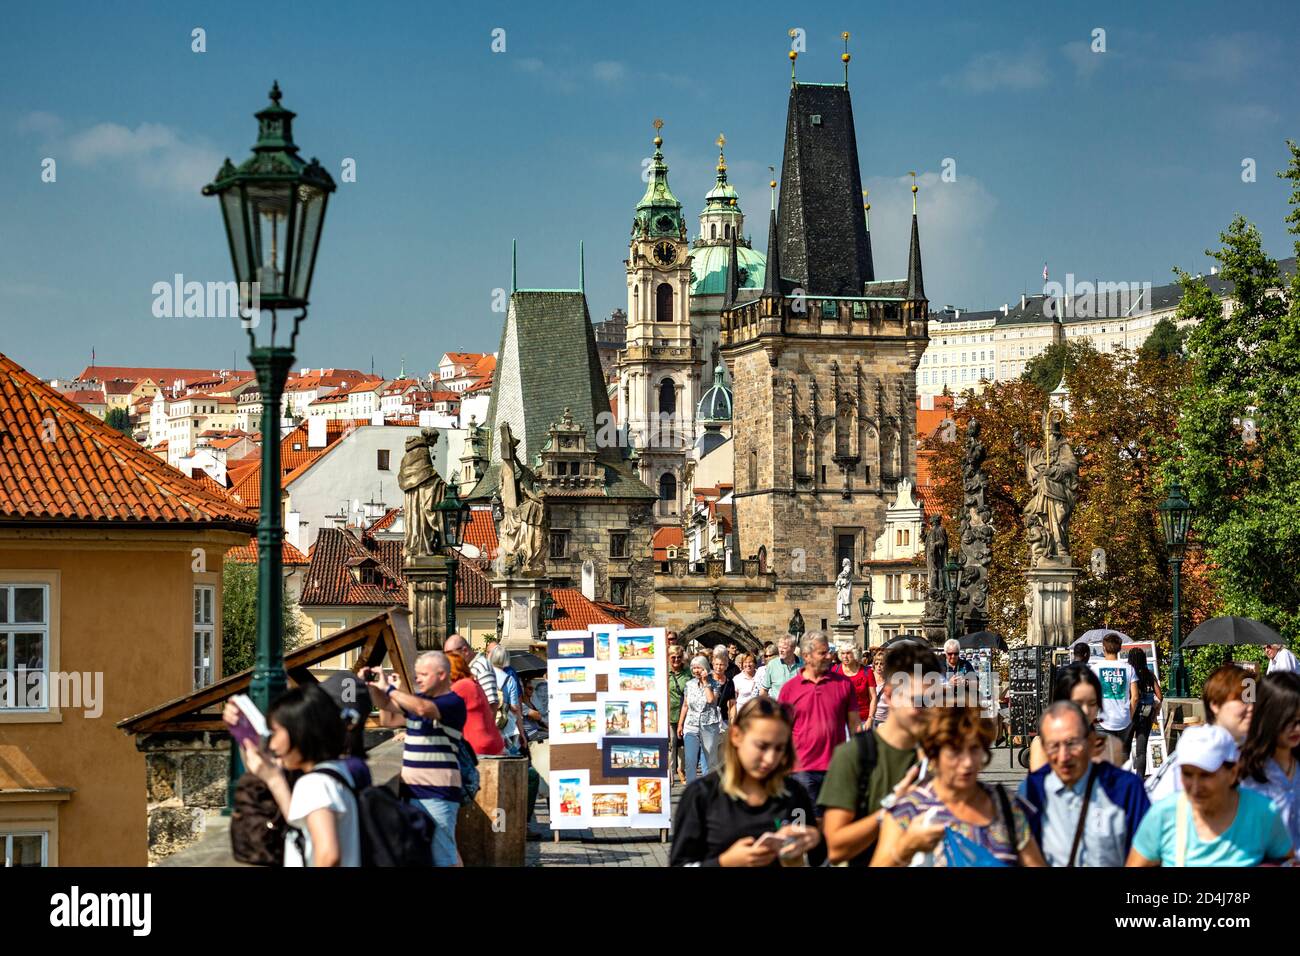 Brückenturm (rechts) und Menschenmenge auf der Karlsbrücke, kleines Viertel, Prag, Tschechische Republik Stockfoto